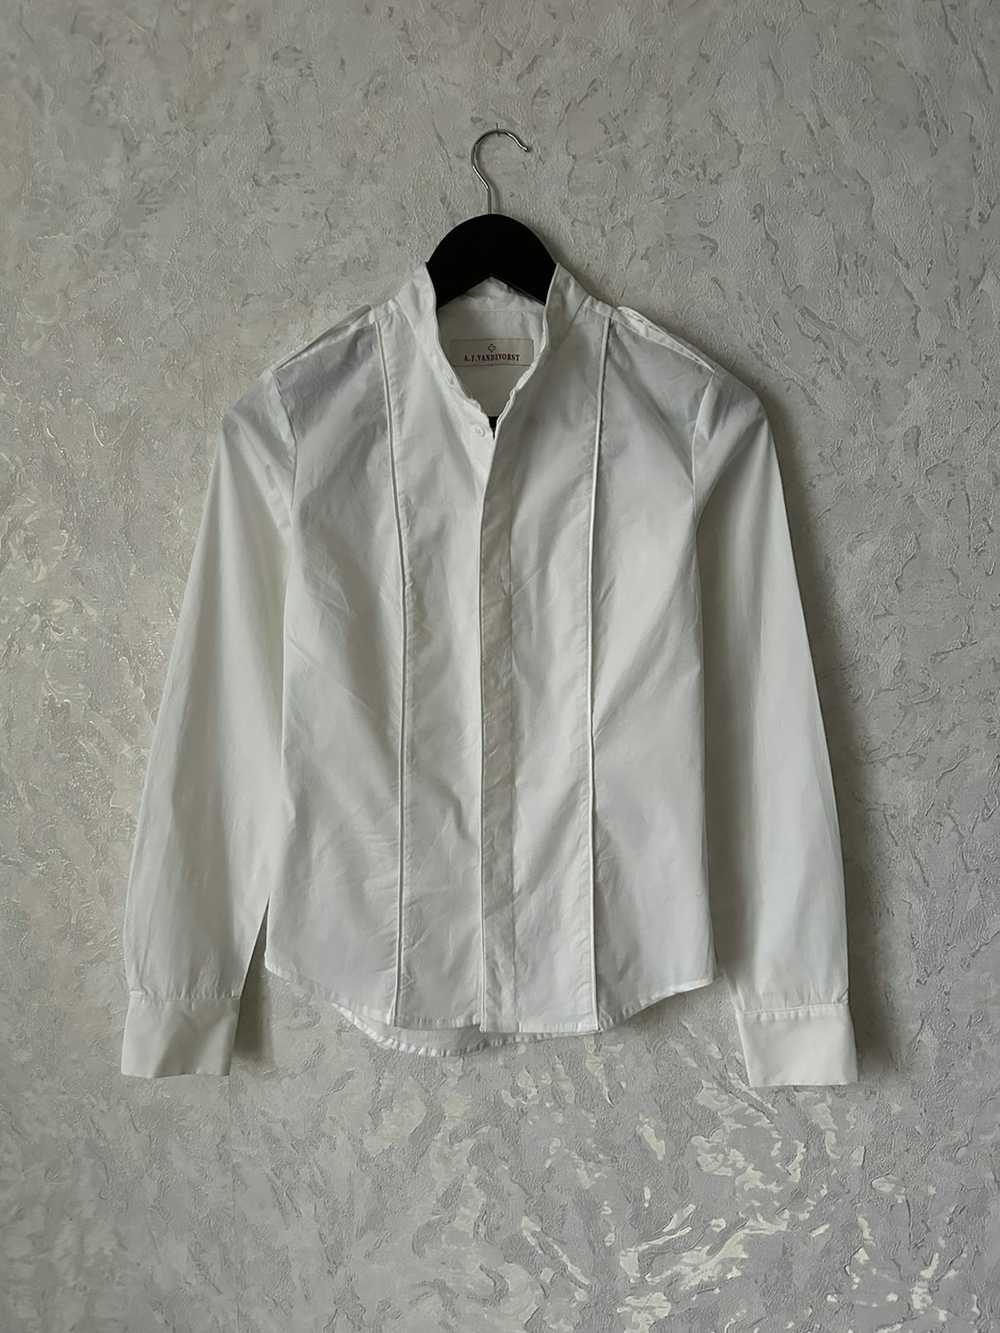 A.F. Vandevorst A.F VANDEVORST white shirt - image 1